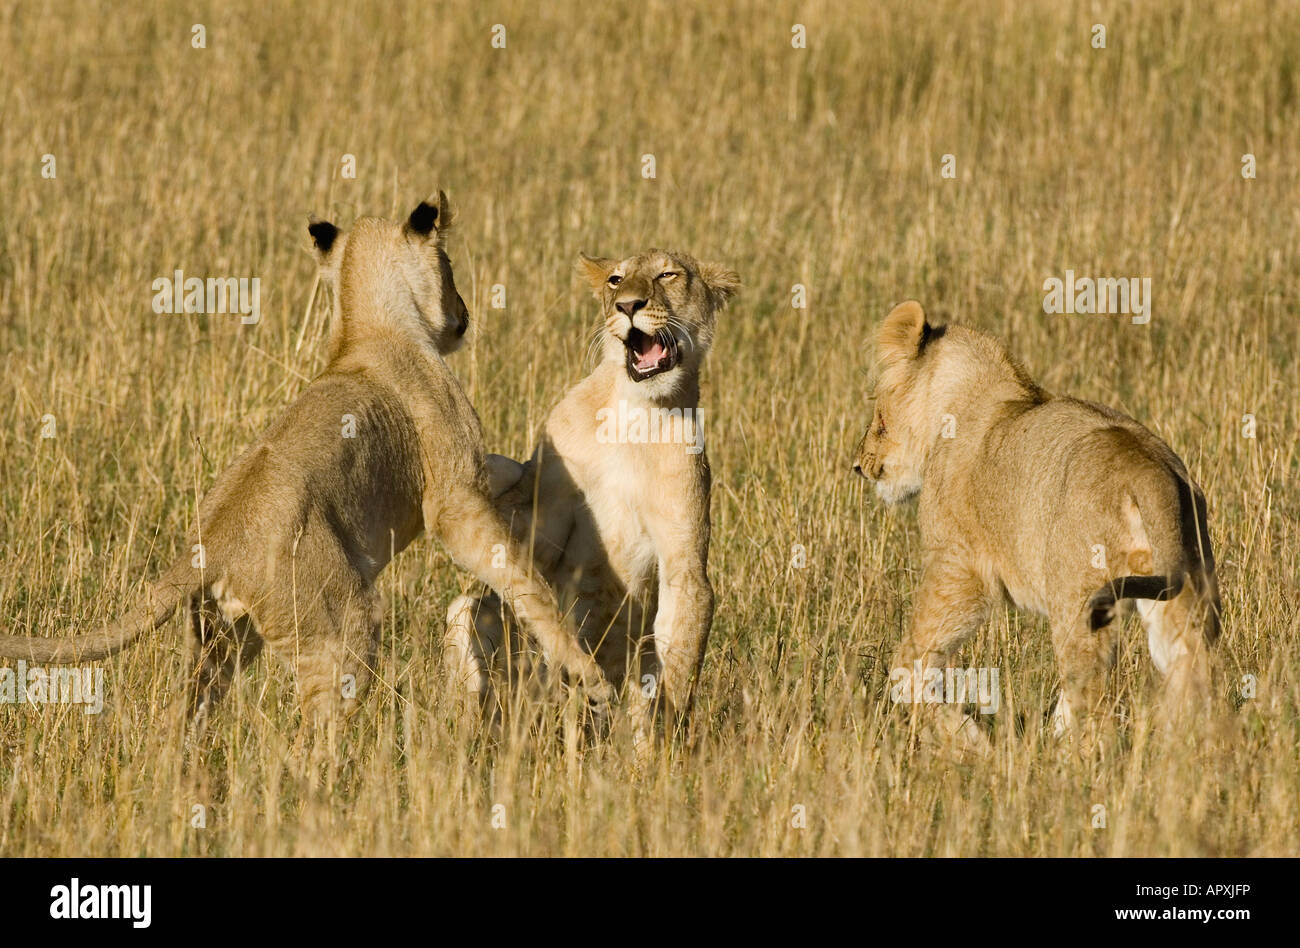 Lion cubs at play (Panthera leo) Stock Photo